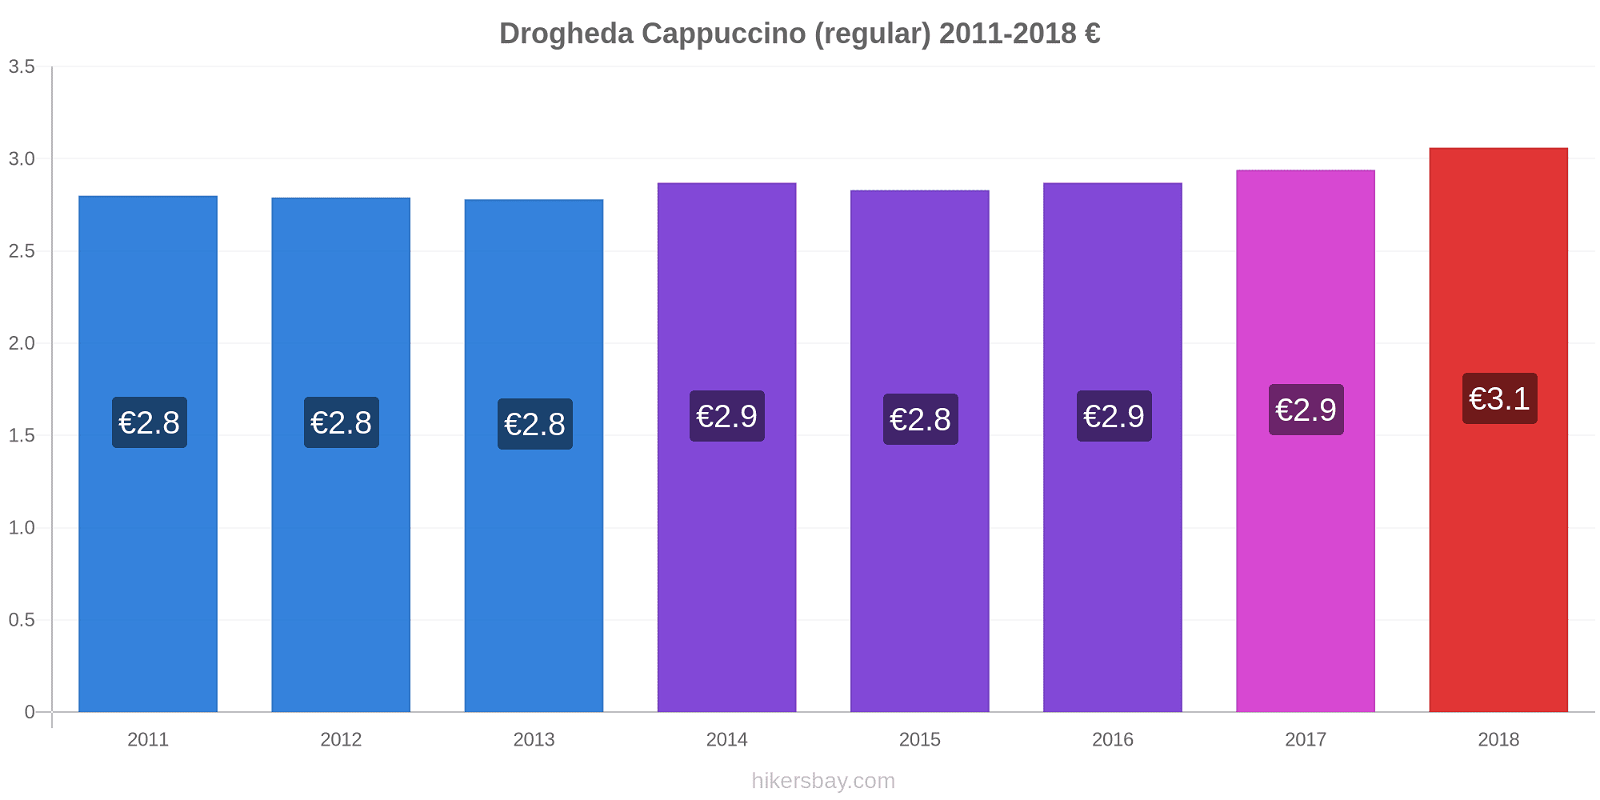 Drogheda price changes Cappuccino (regular) hikersbay.com